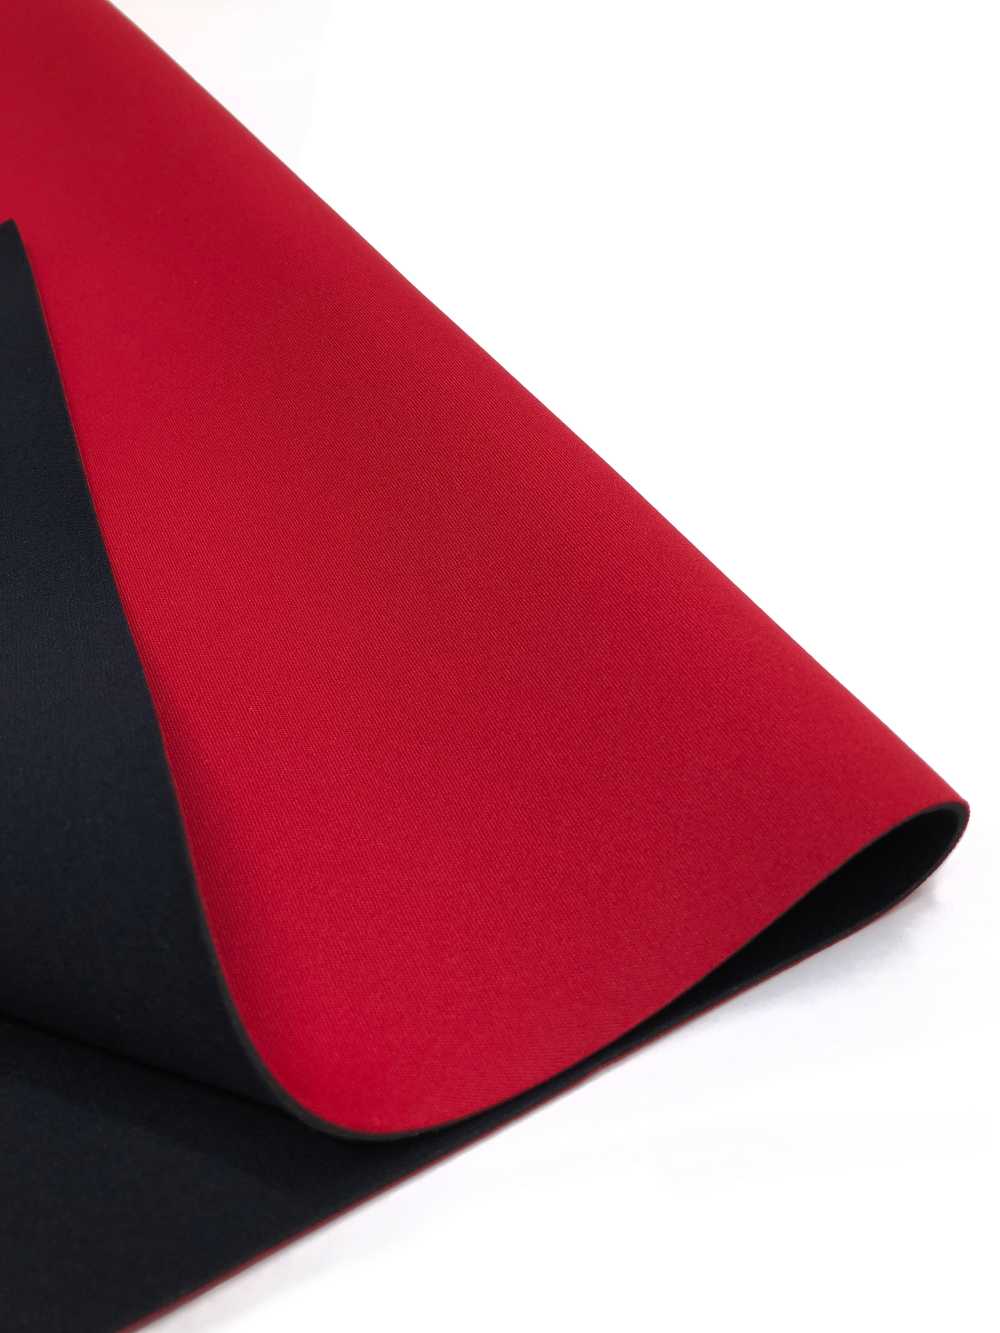 31039 HM AL Rojo/PS Negro 95 × 170cm[Fabrica Textil] Tortuga